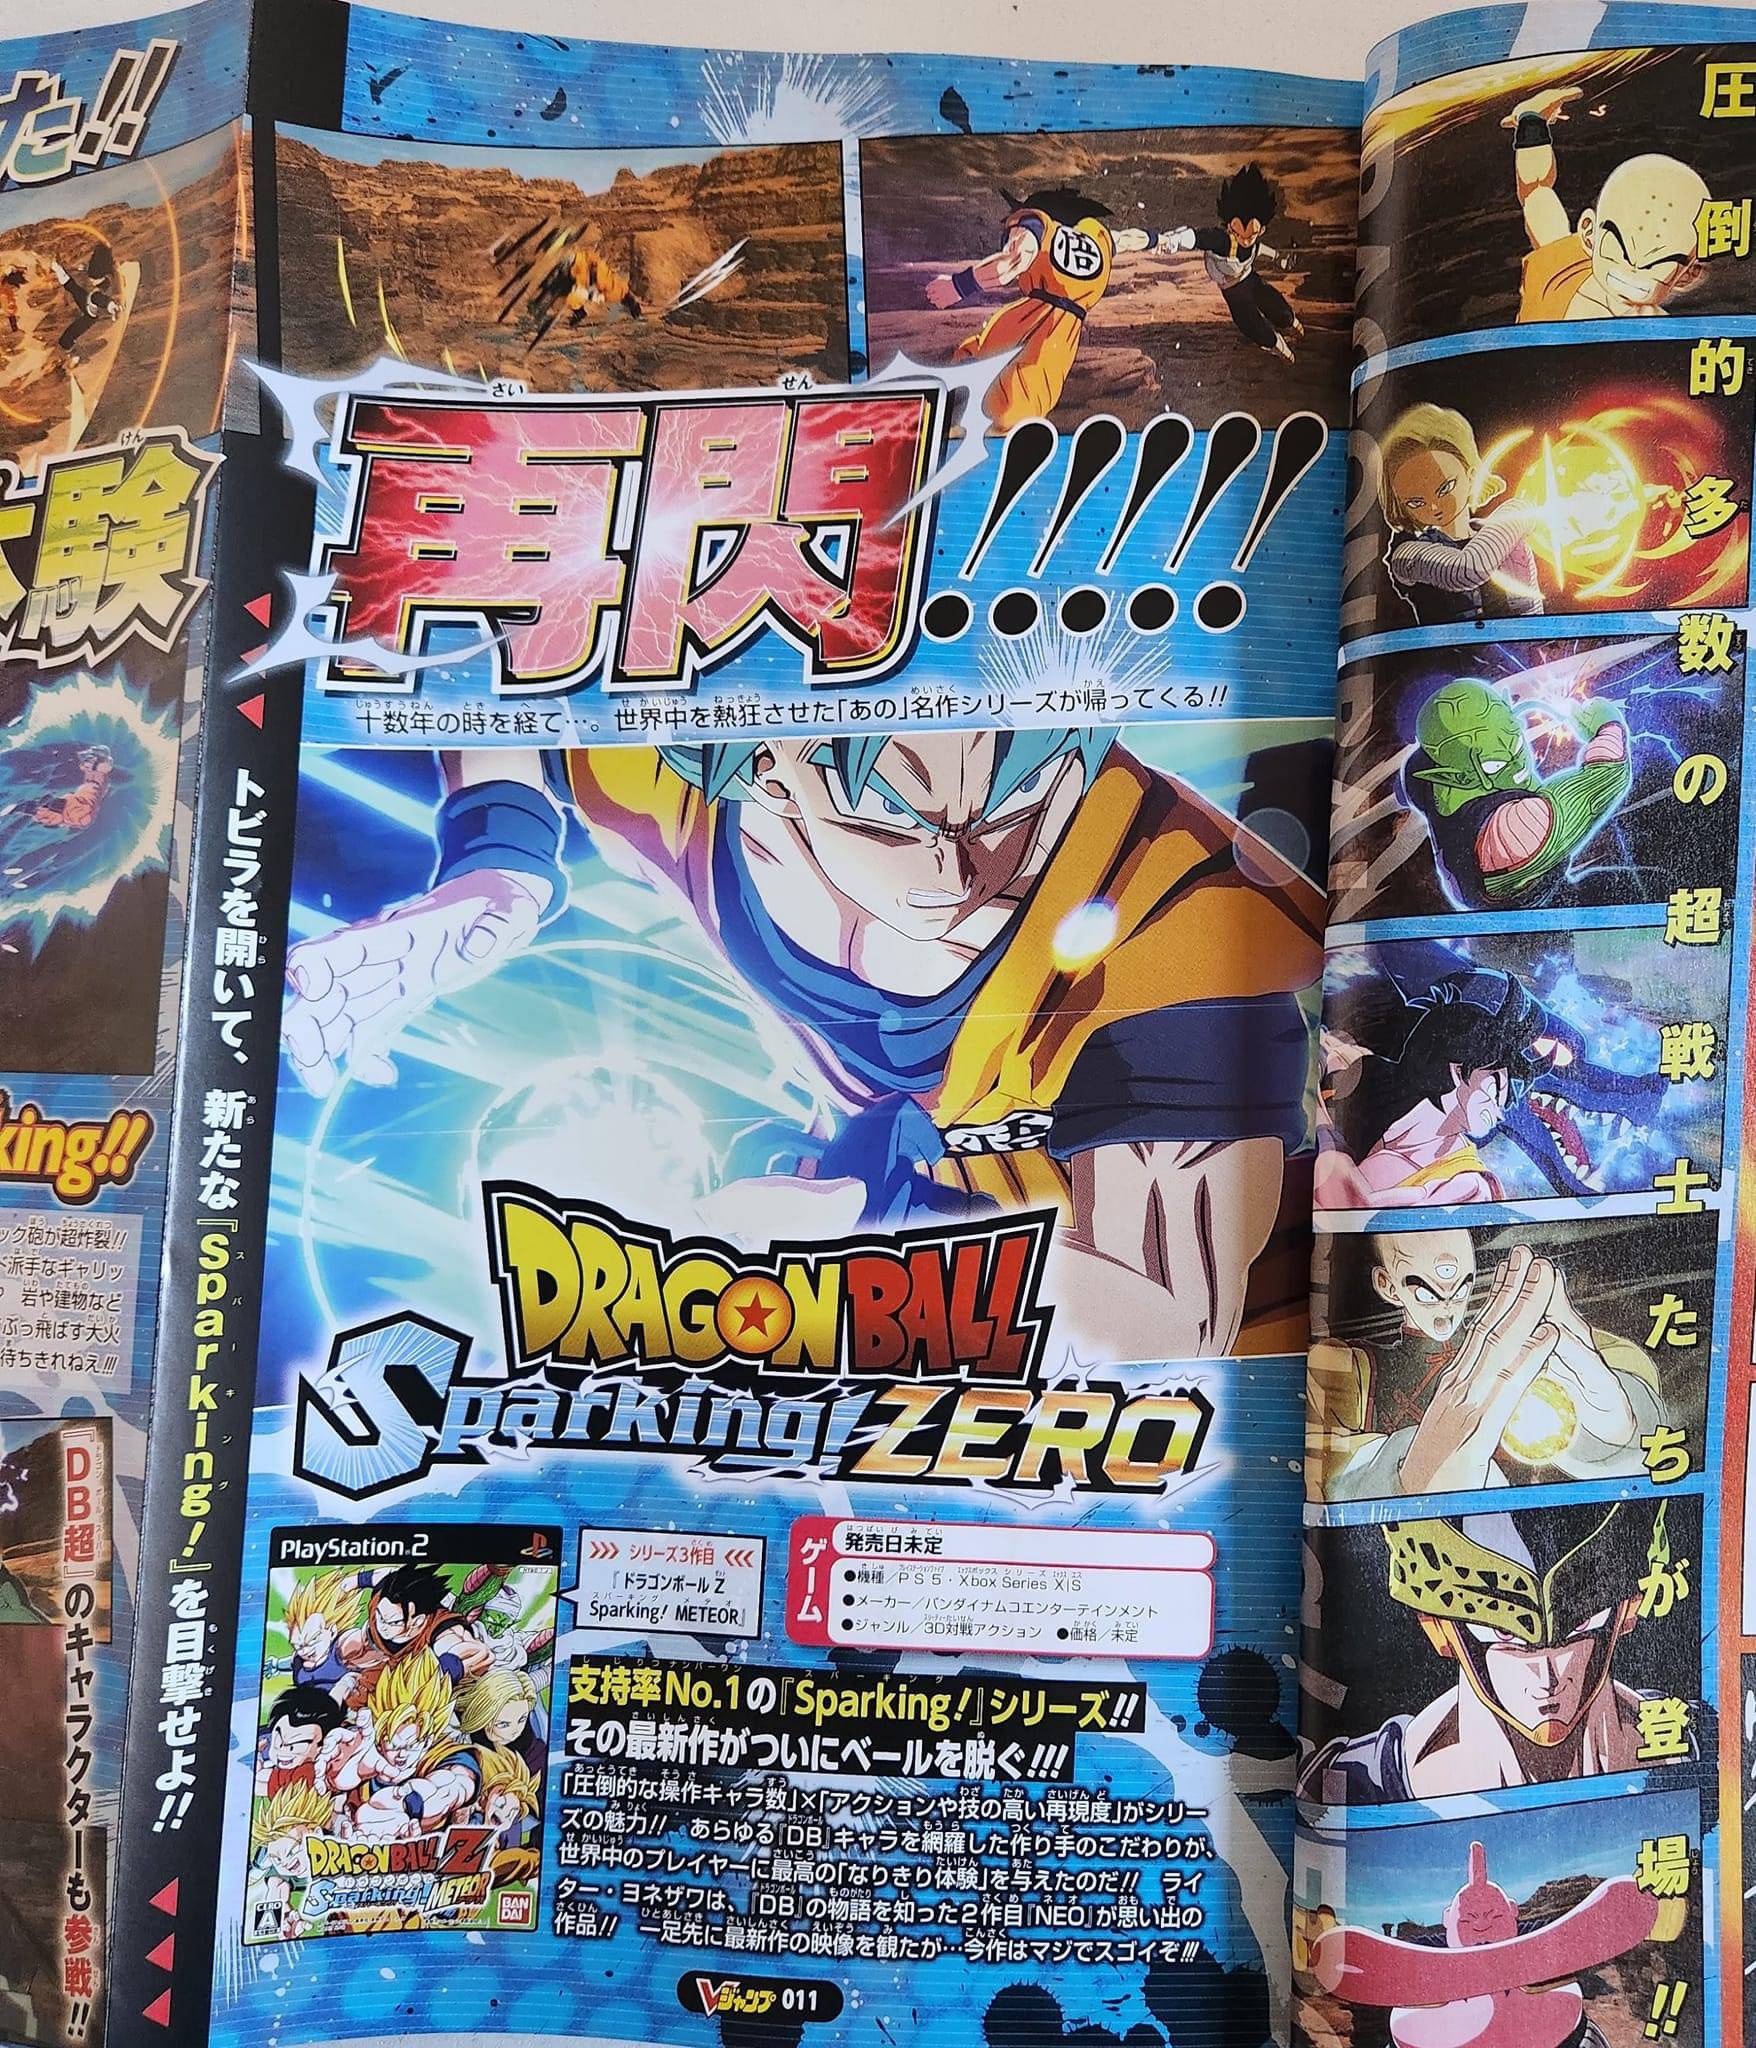 Surgen nuevas imágenes de Dragon Ball Sparking Zero!